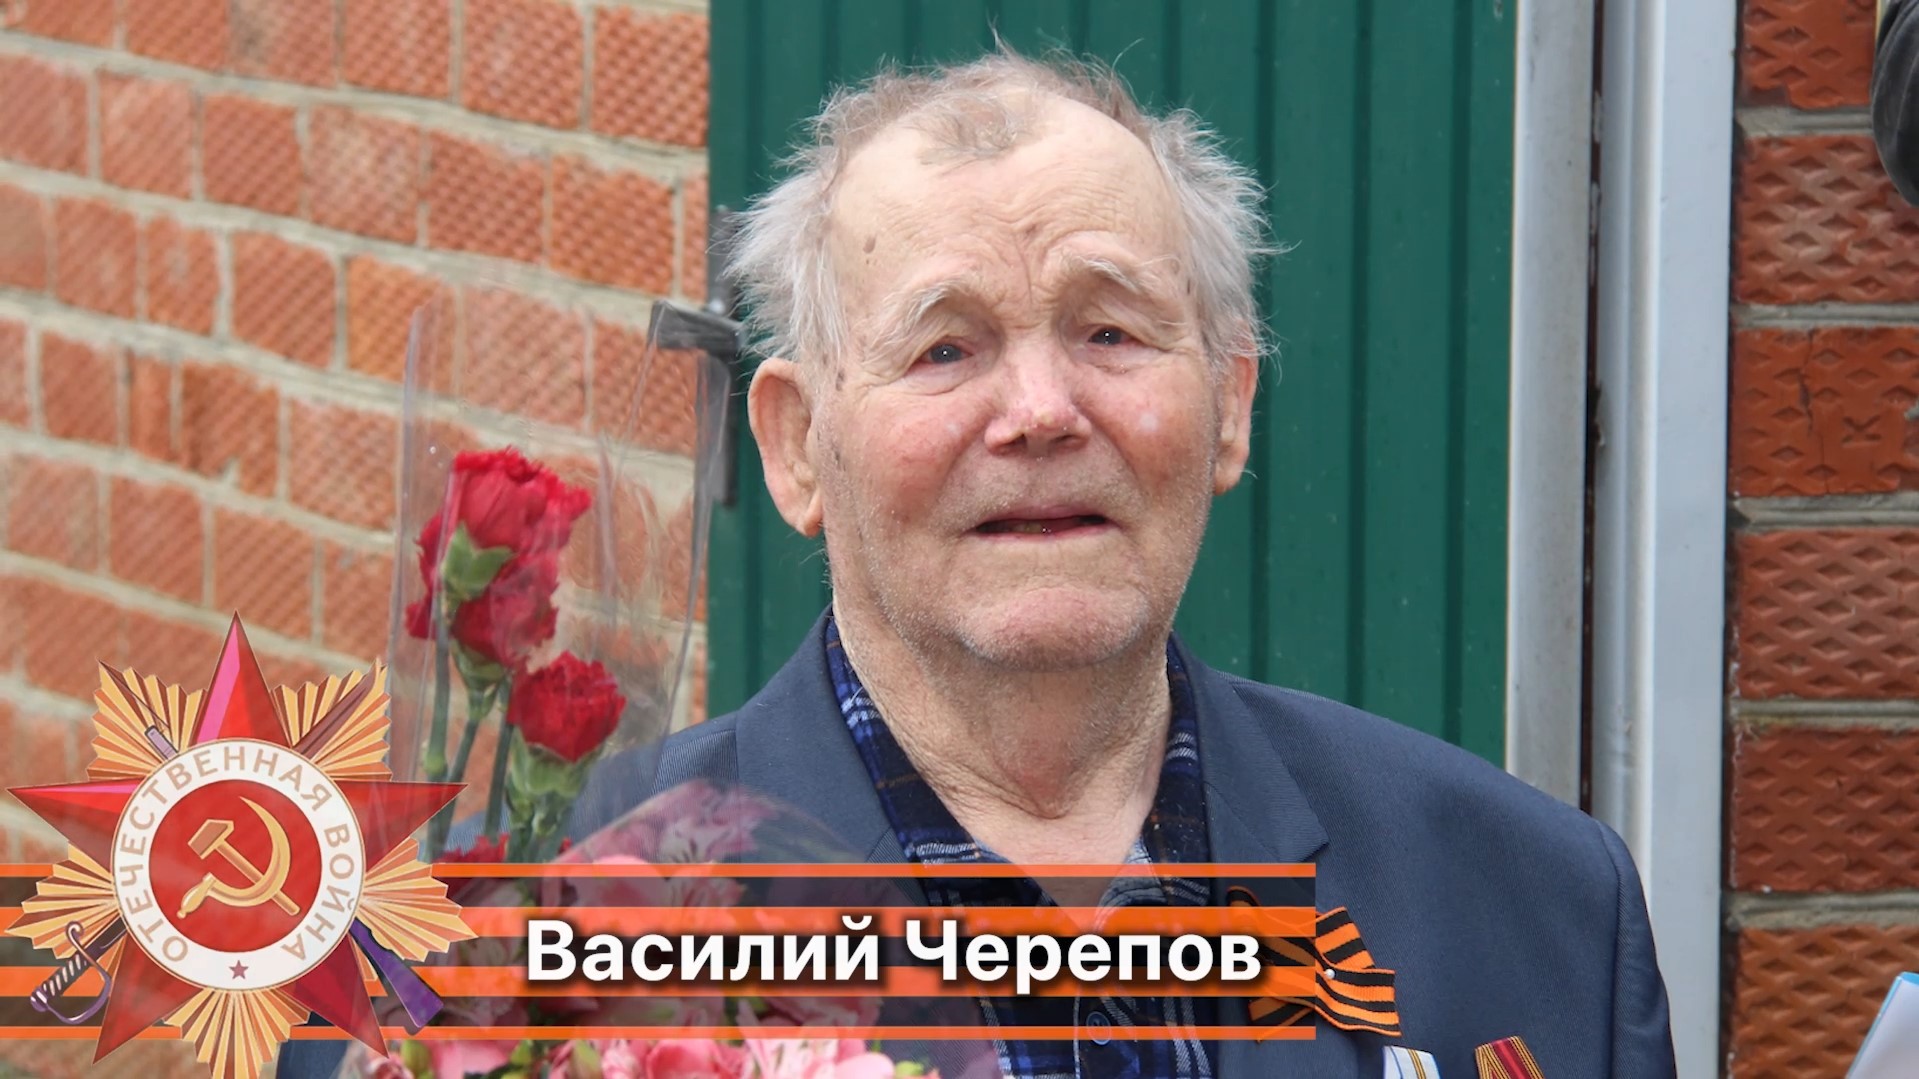 Василий Черепов ветеран великой отечественной войны 1941-1945